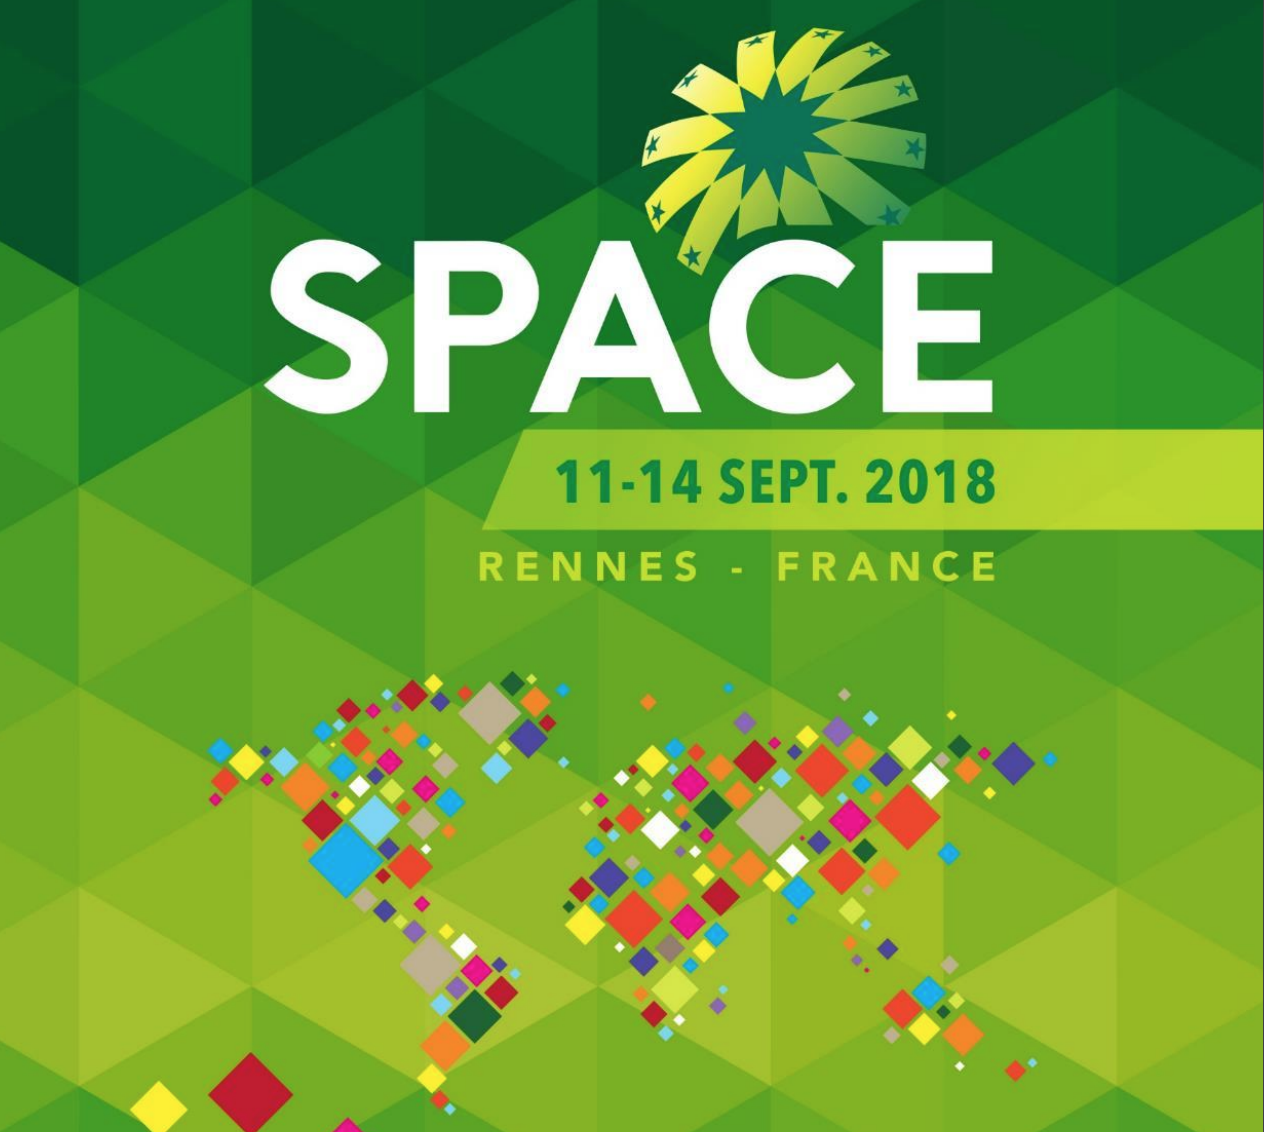 Le Conseil des Equidés de Bretagne sera présent au SPACE à Rennes, du 11 au 14 septembre